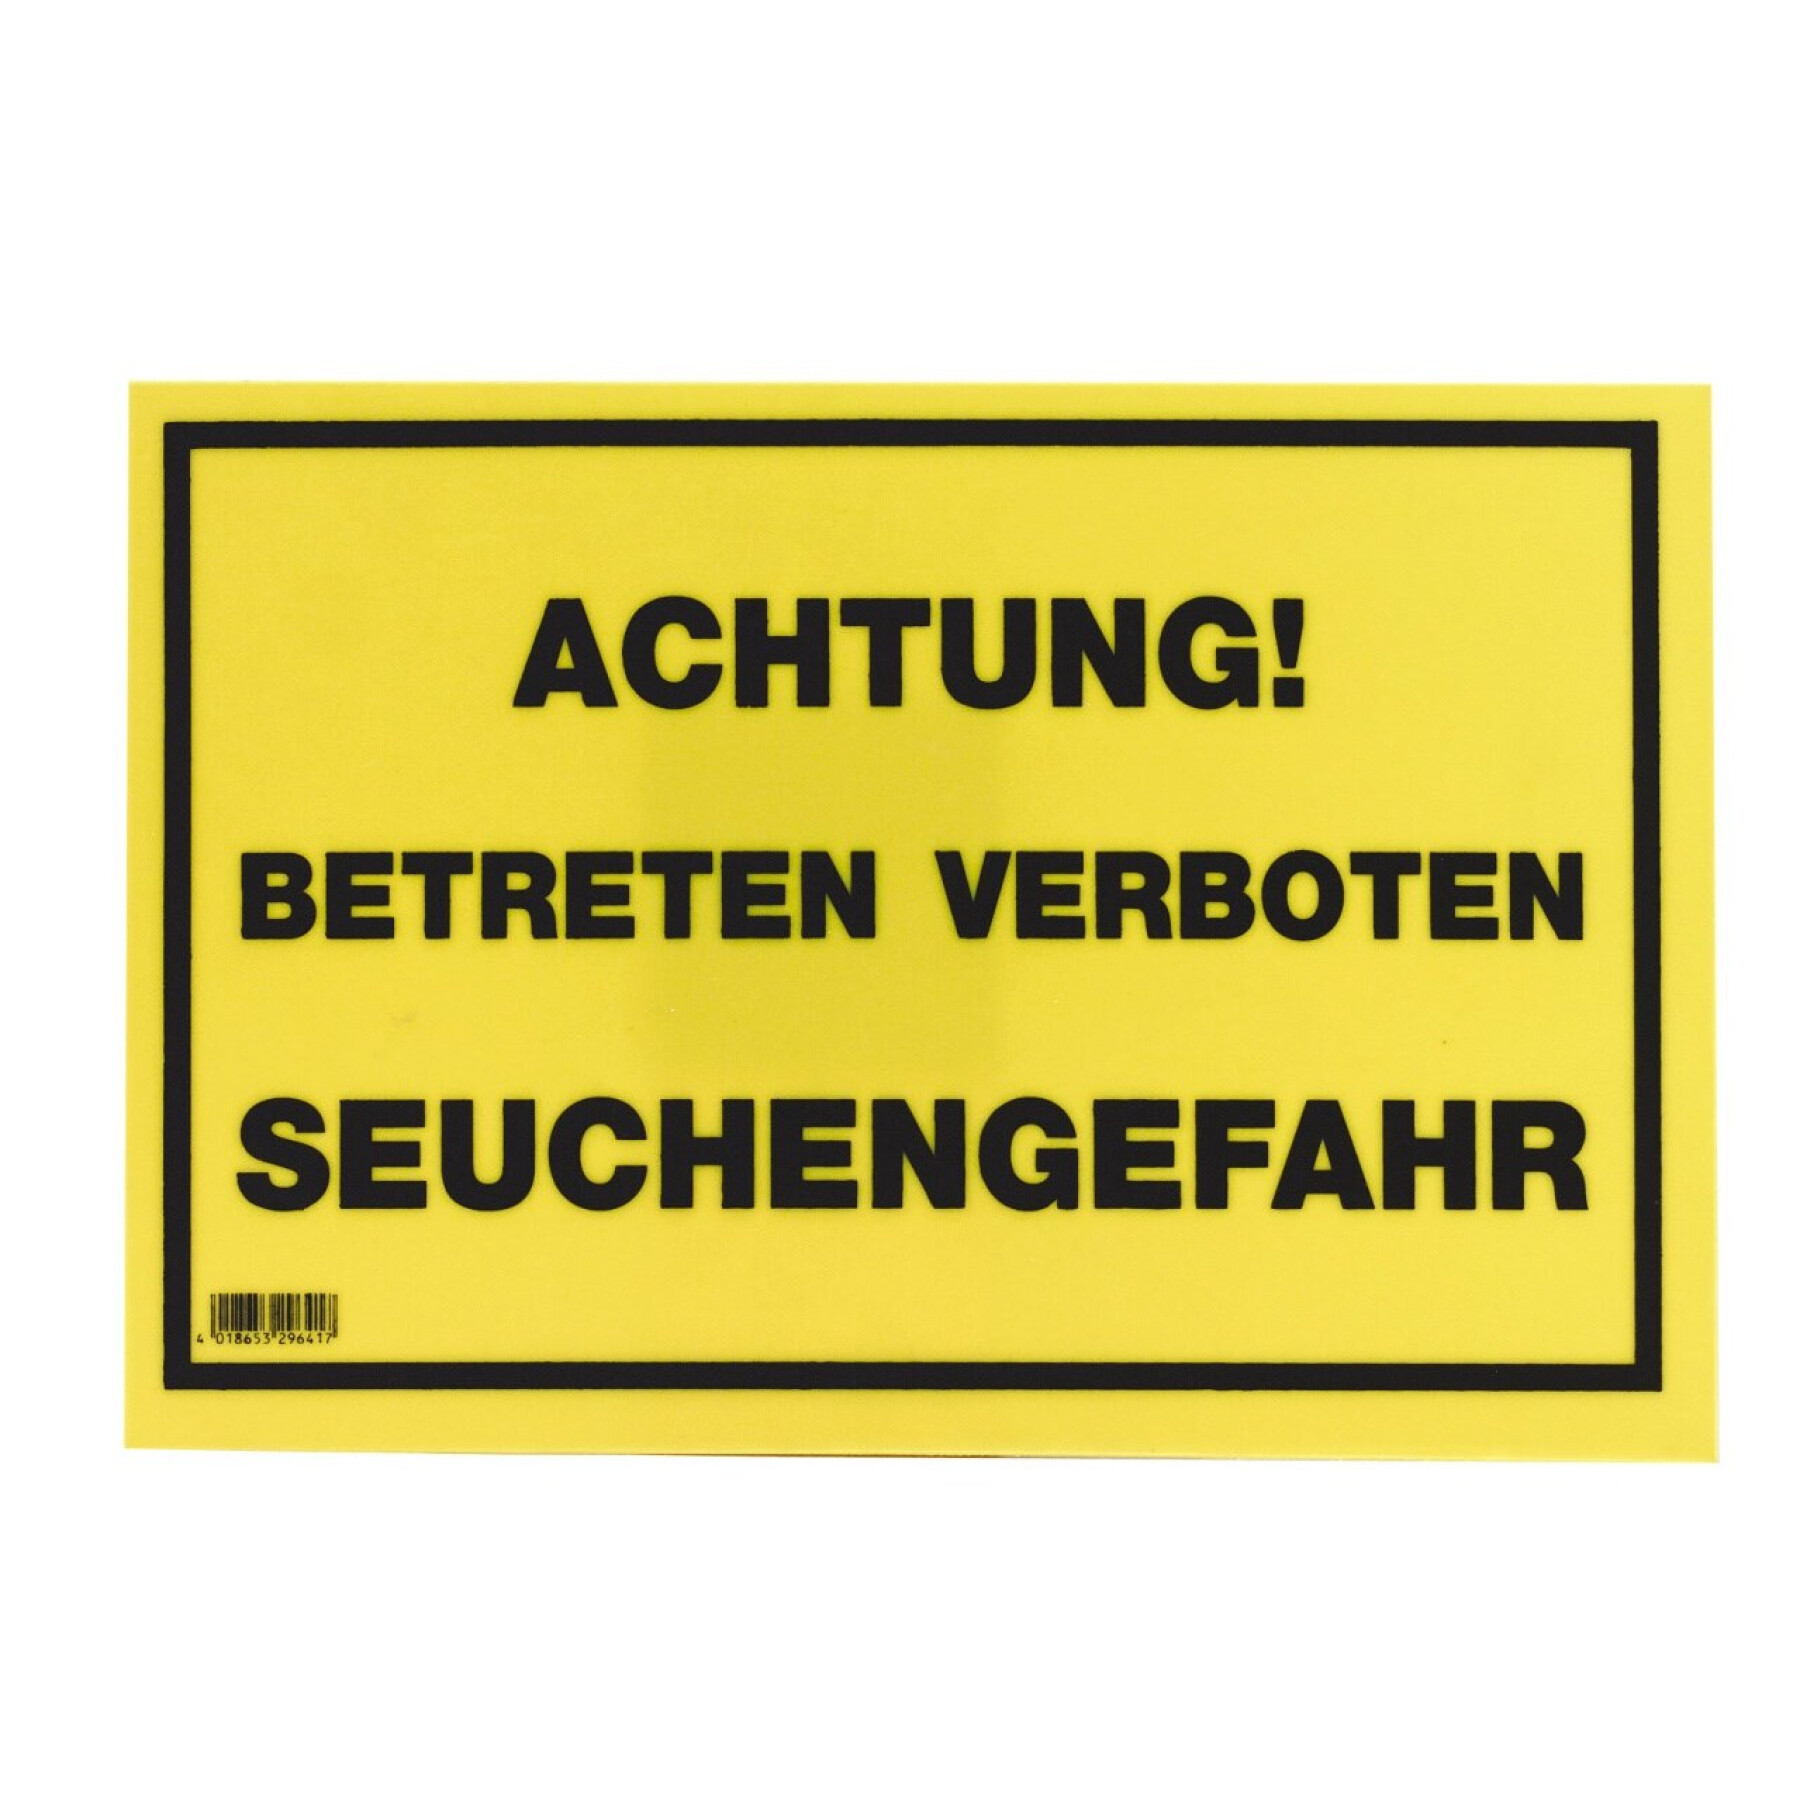 Panneau d'affichage Attention, entrée interdite,danger contamination Kerbl